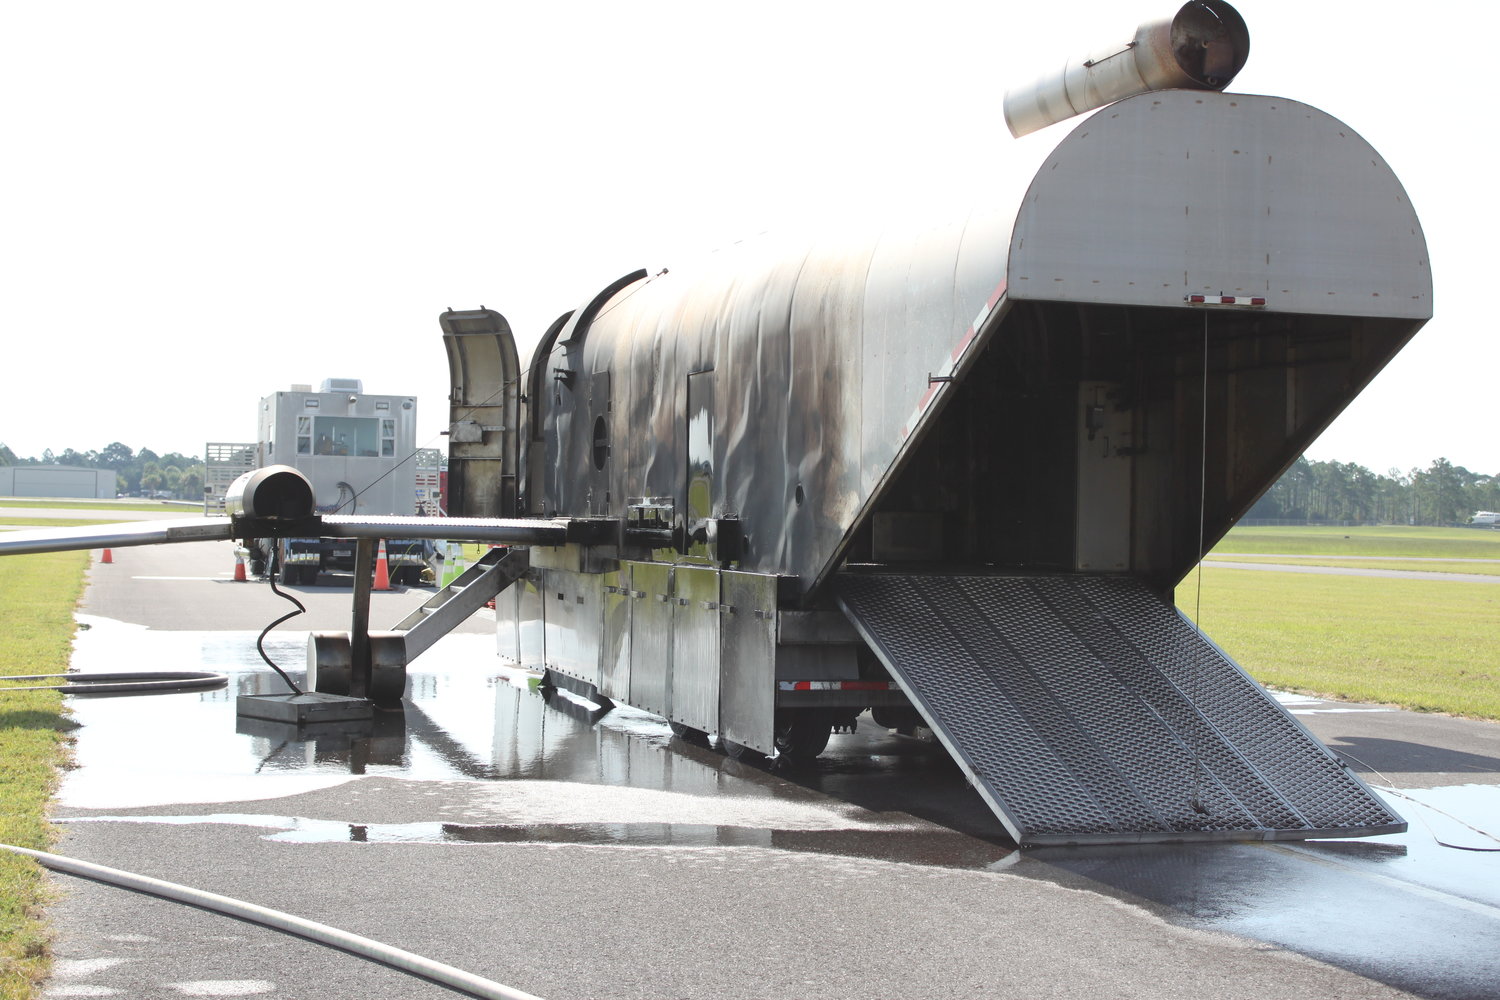 The U.S. Navyâs trailer mounted aircraft replica training system.